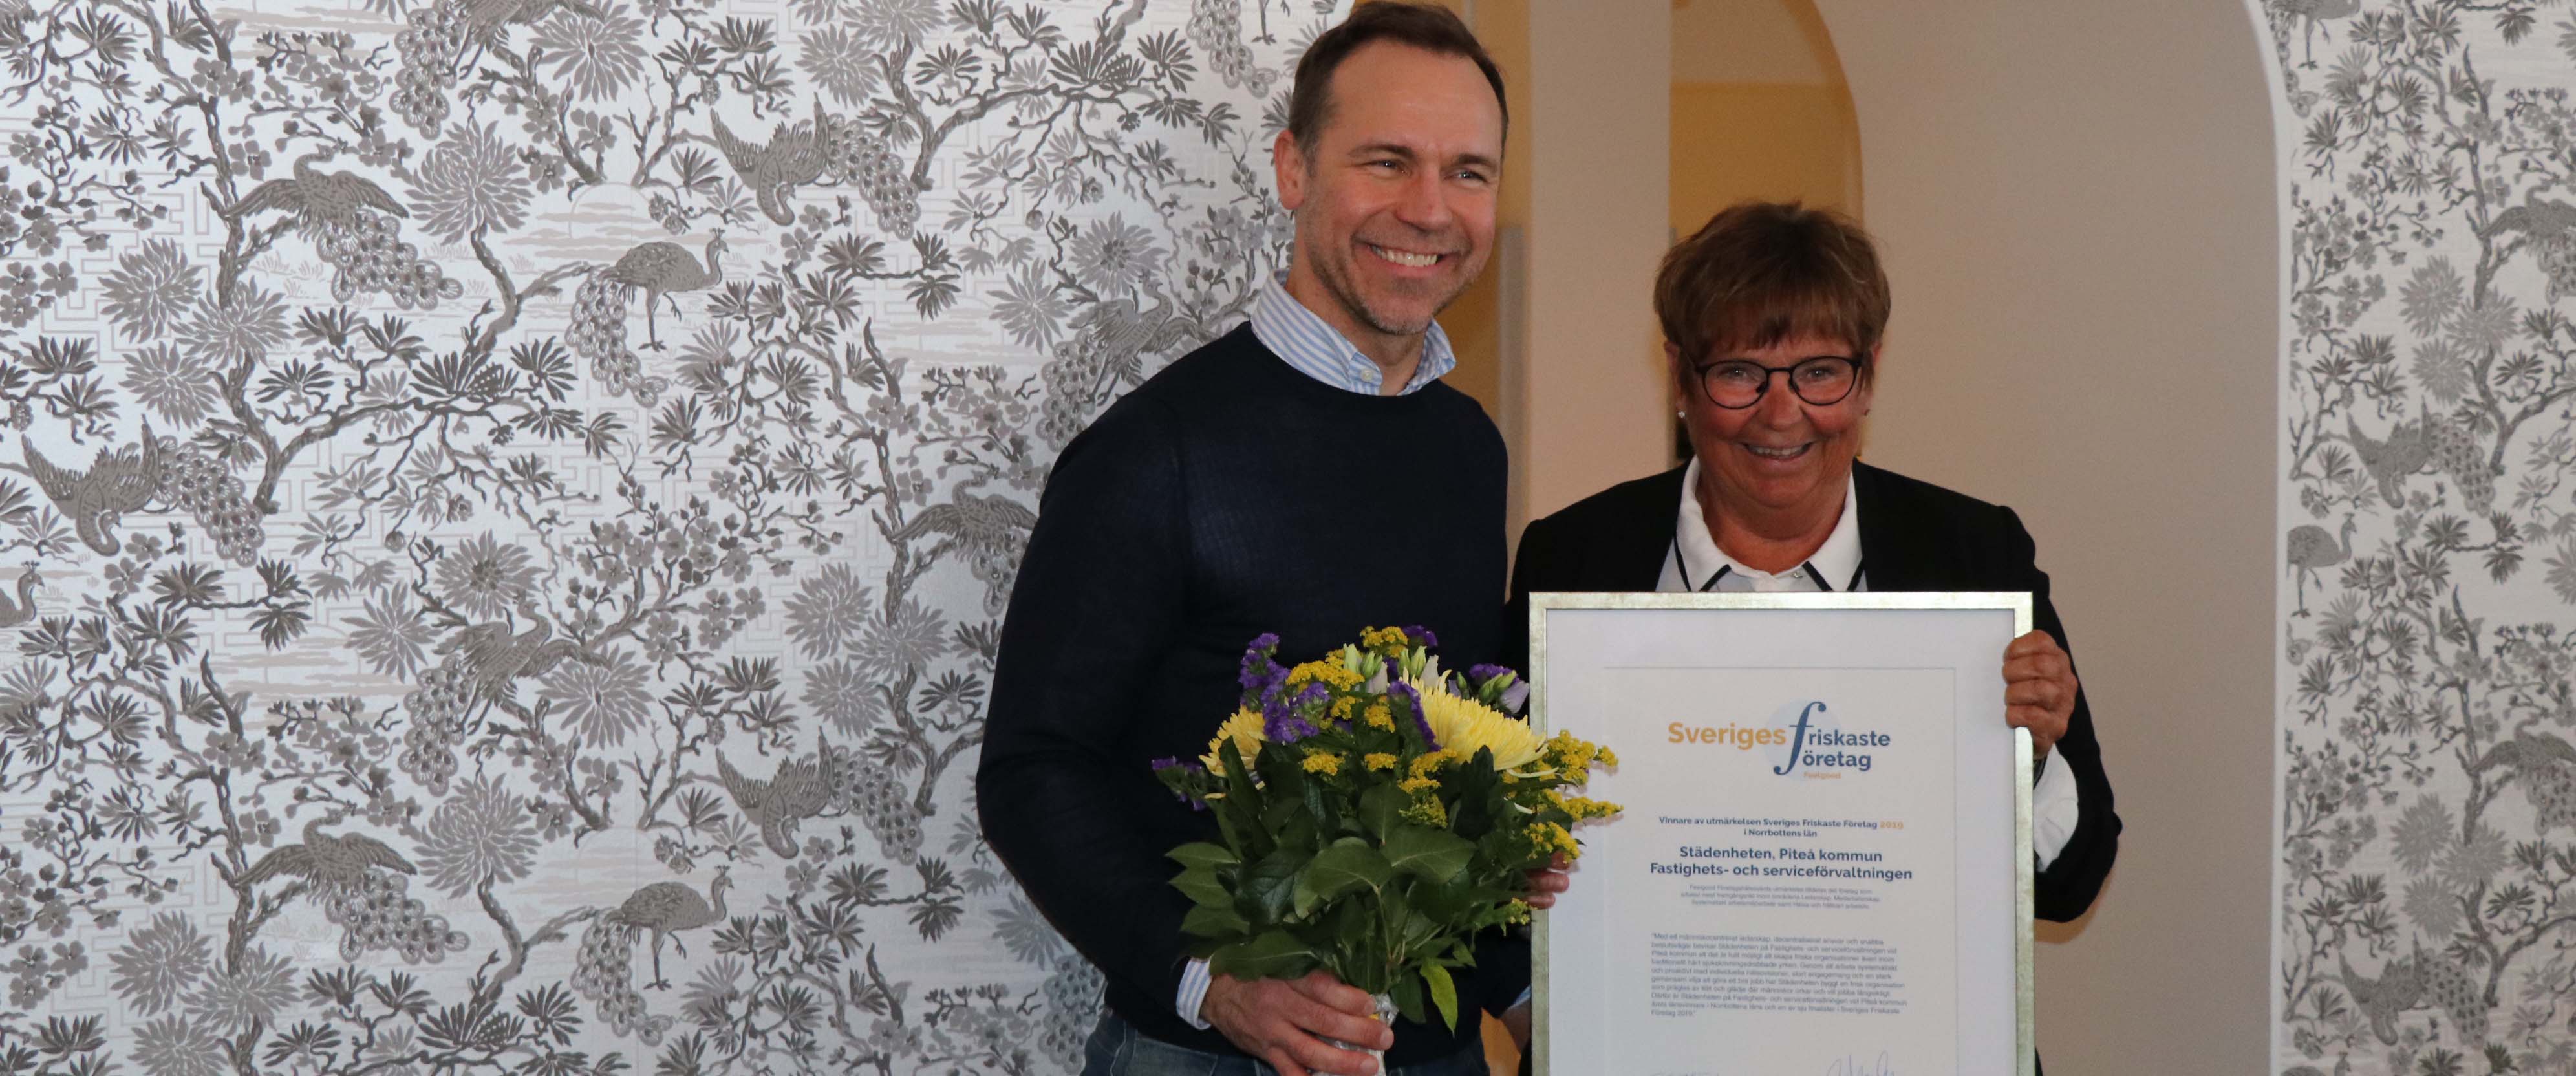 Margareta Lundgren, städenheten tog emot priset för Norrbottens friskaste företag